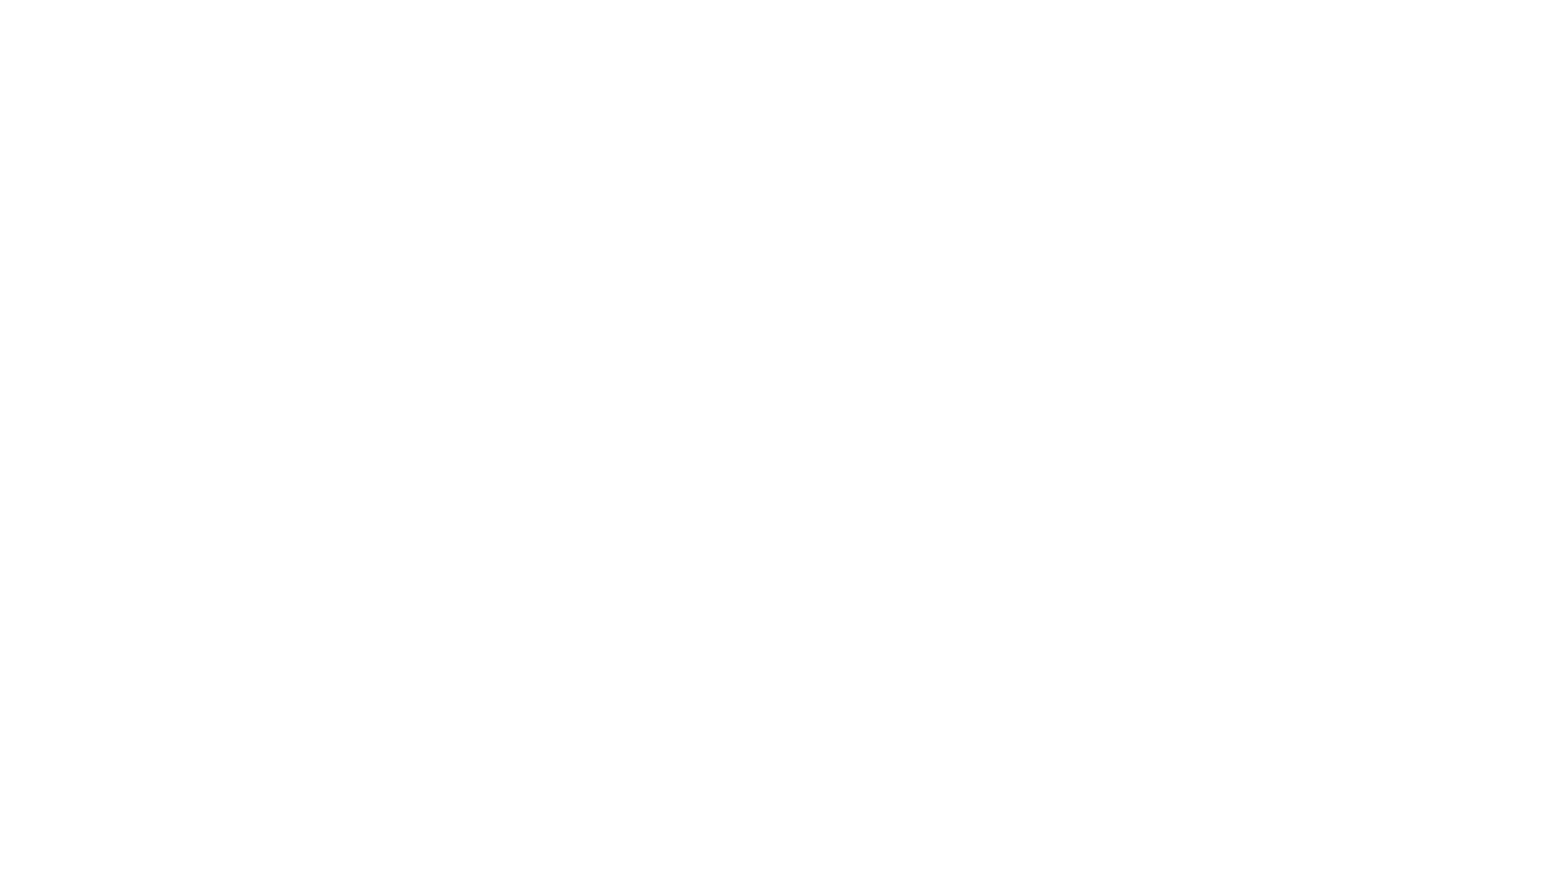 Сбор лепестков эфиромасличной розы в селе Тургеневка Бахчисарайского района. Из собранных лепестков делают эфирное розовое масло и розовую воду, которые применяются в парфюмерии